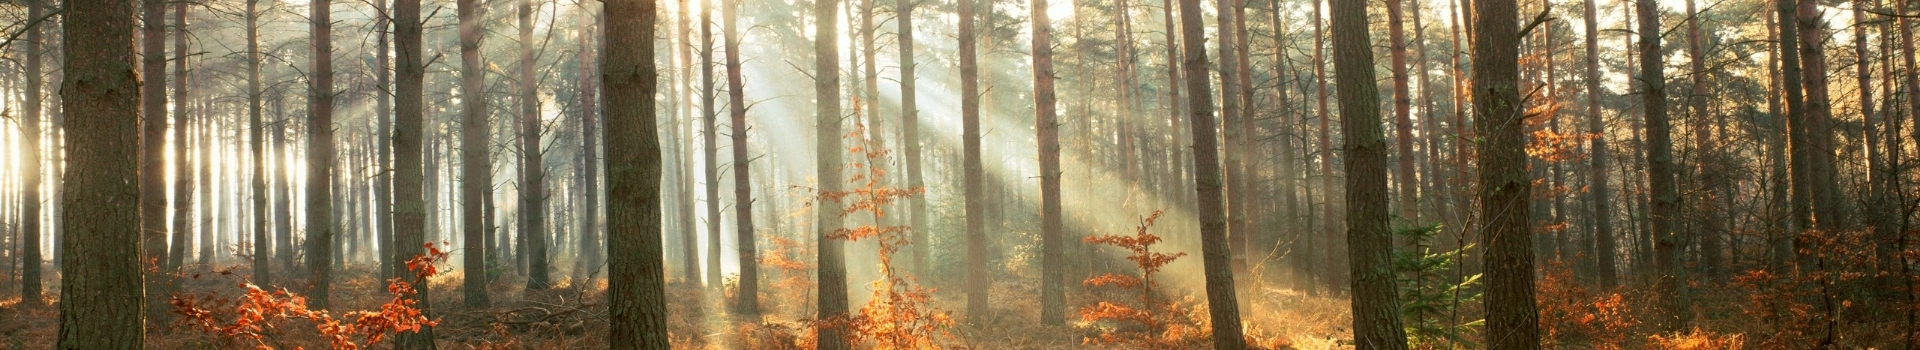 jesienny las i promienie słońca